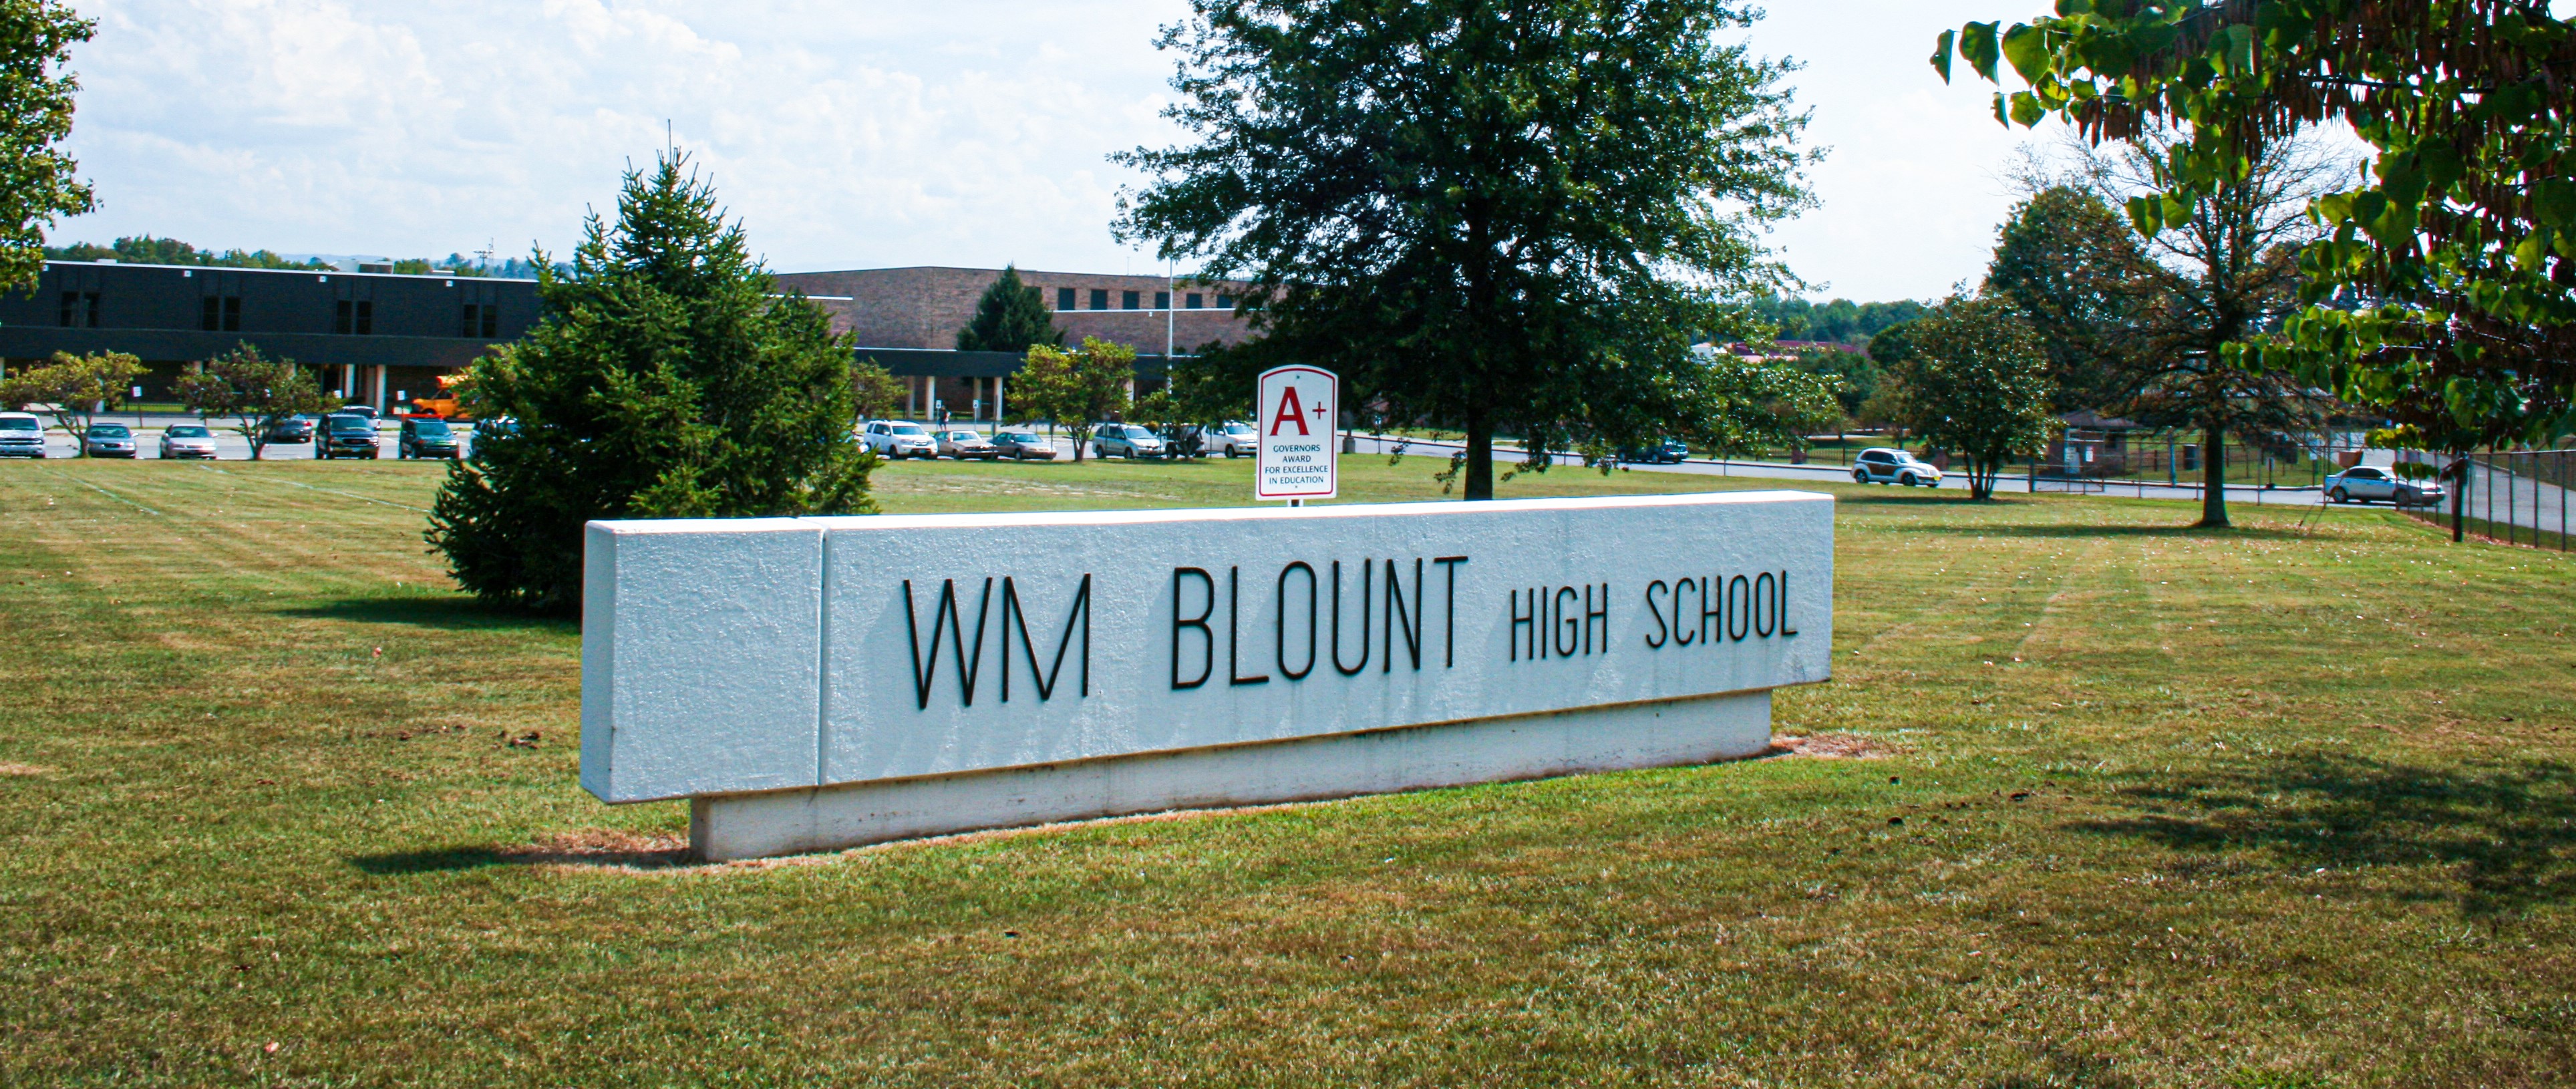 William Blount High School